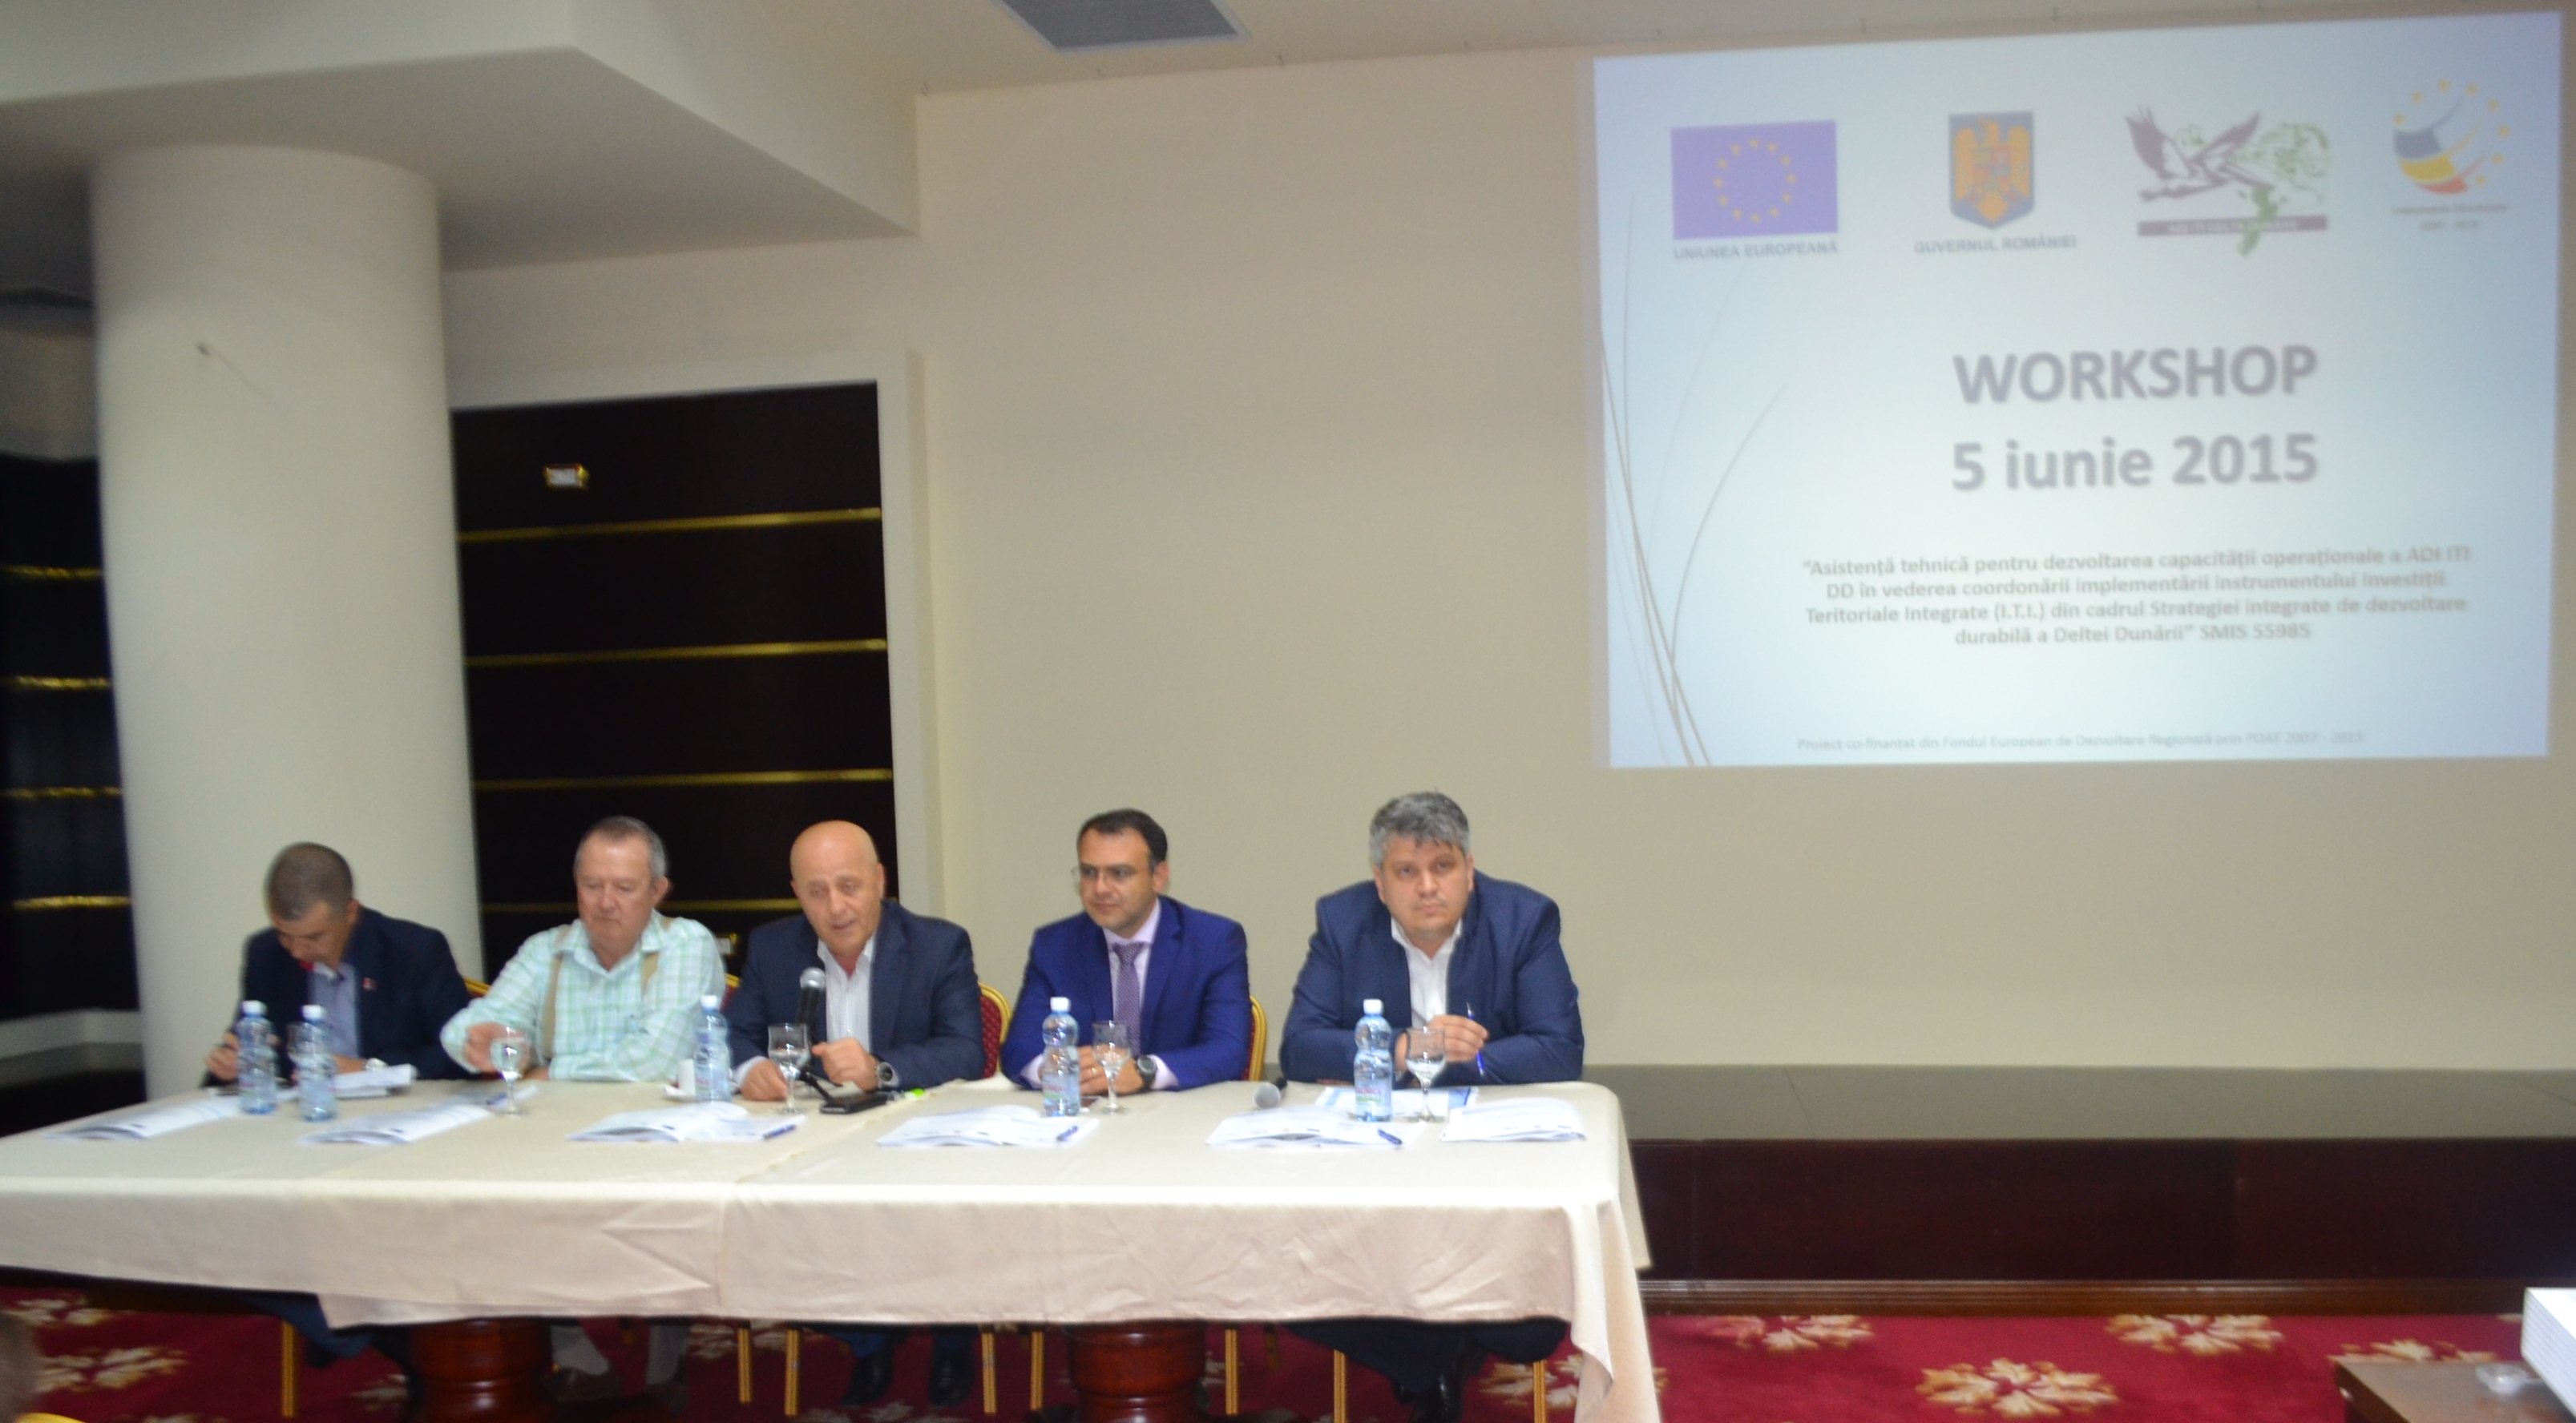 Stadiul proiectelor implementate de ADI ITI Delta Dunării, prezentate în cadrul unui workshop